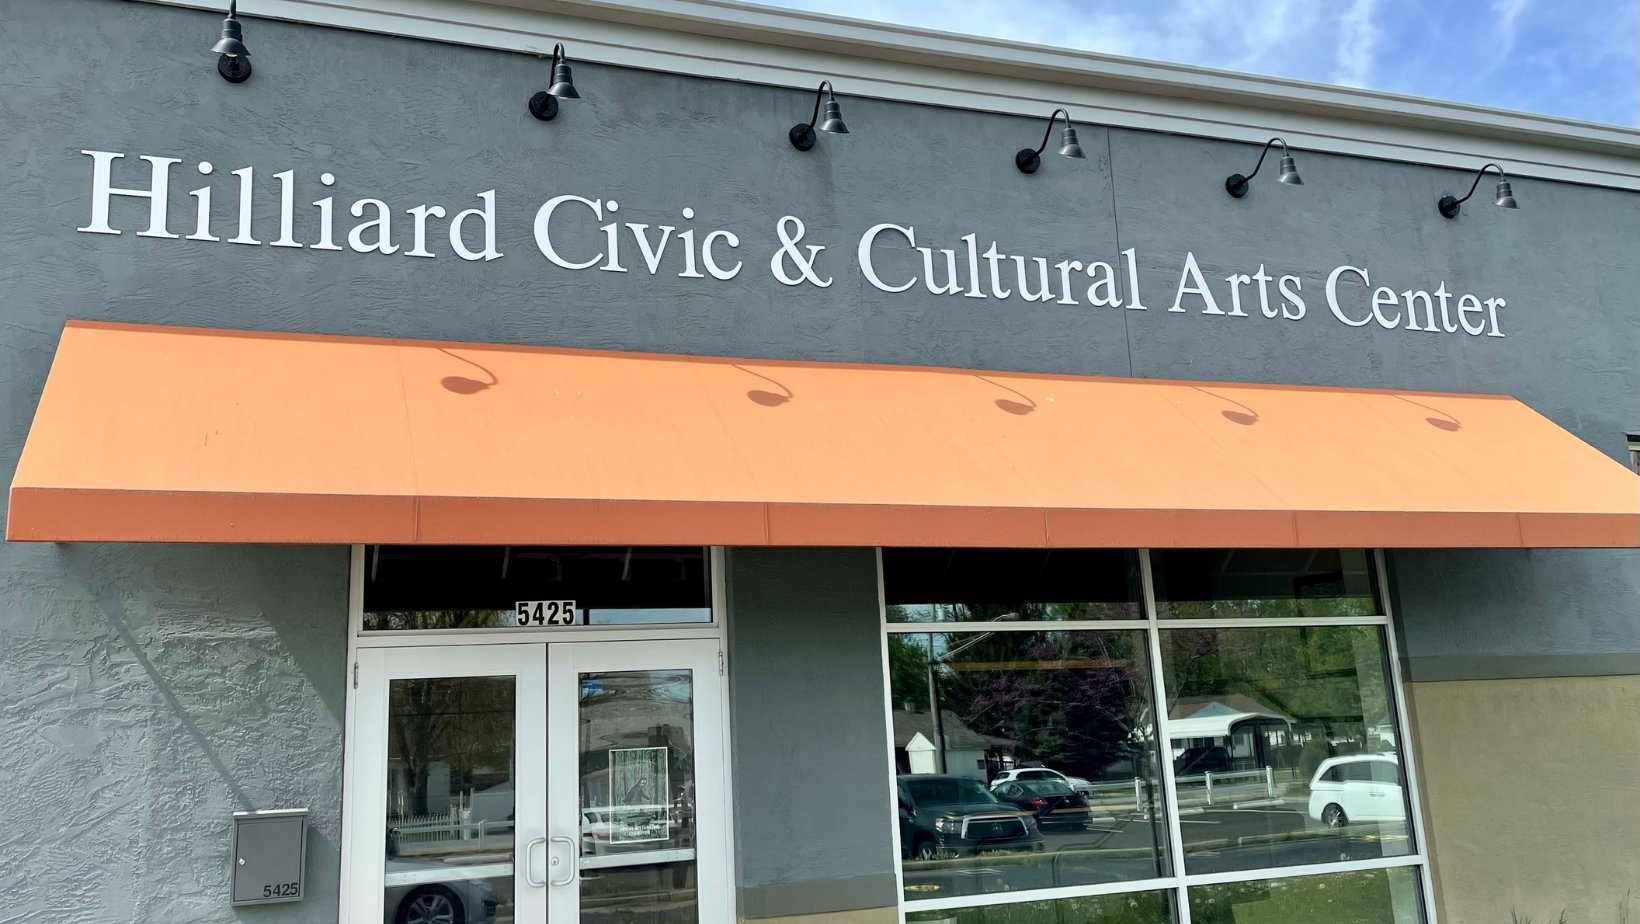 The Hilliard Civic & Cultural Arts Center